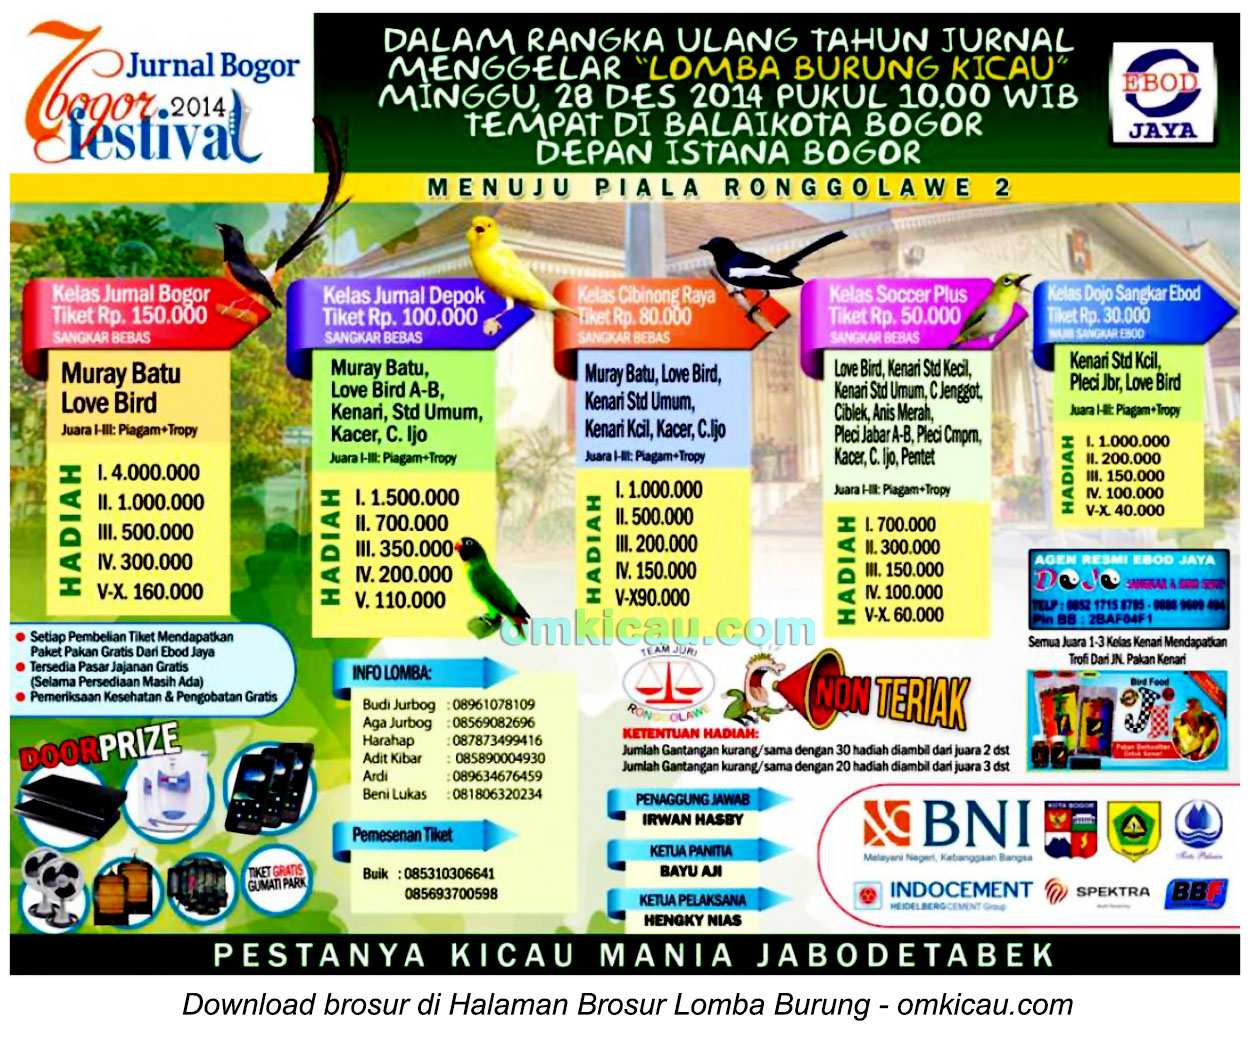 Brosur Lomba Burung Berkicau Festival Bogor, 28 Desember 2014